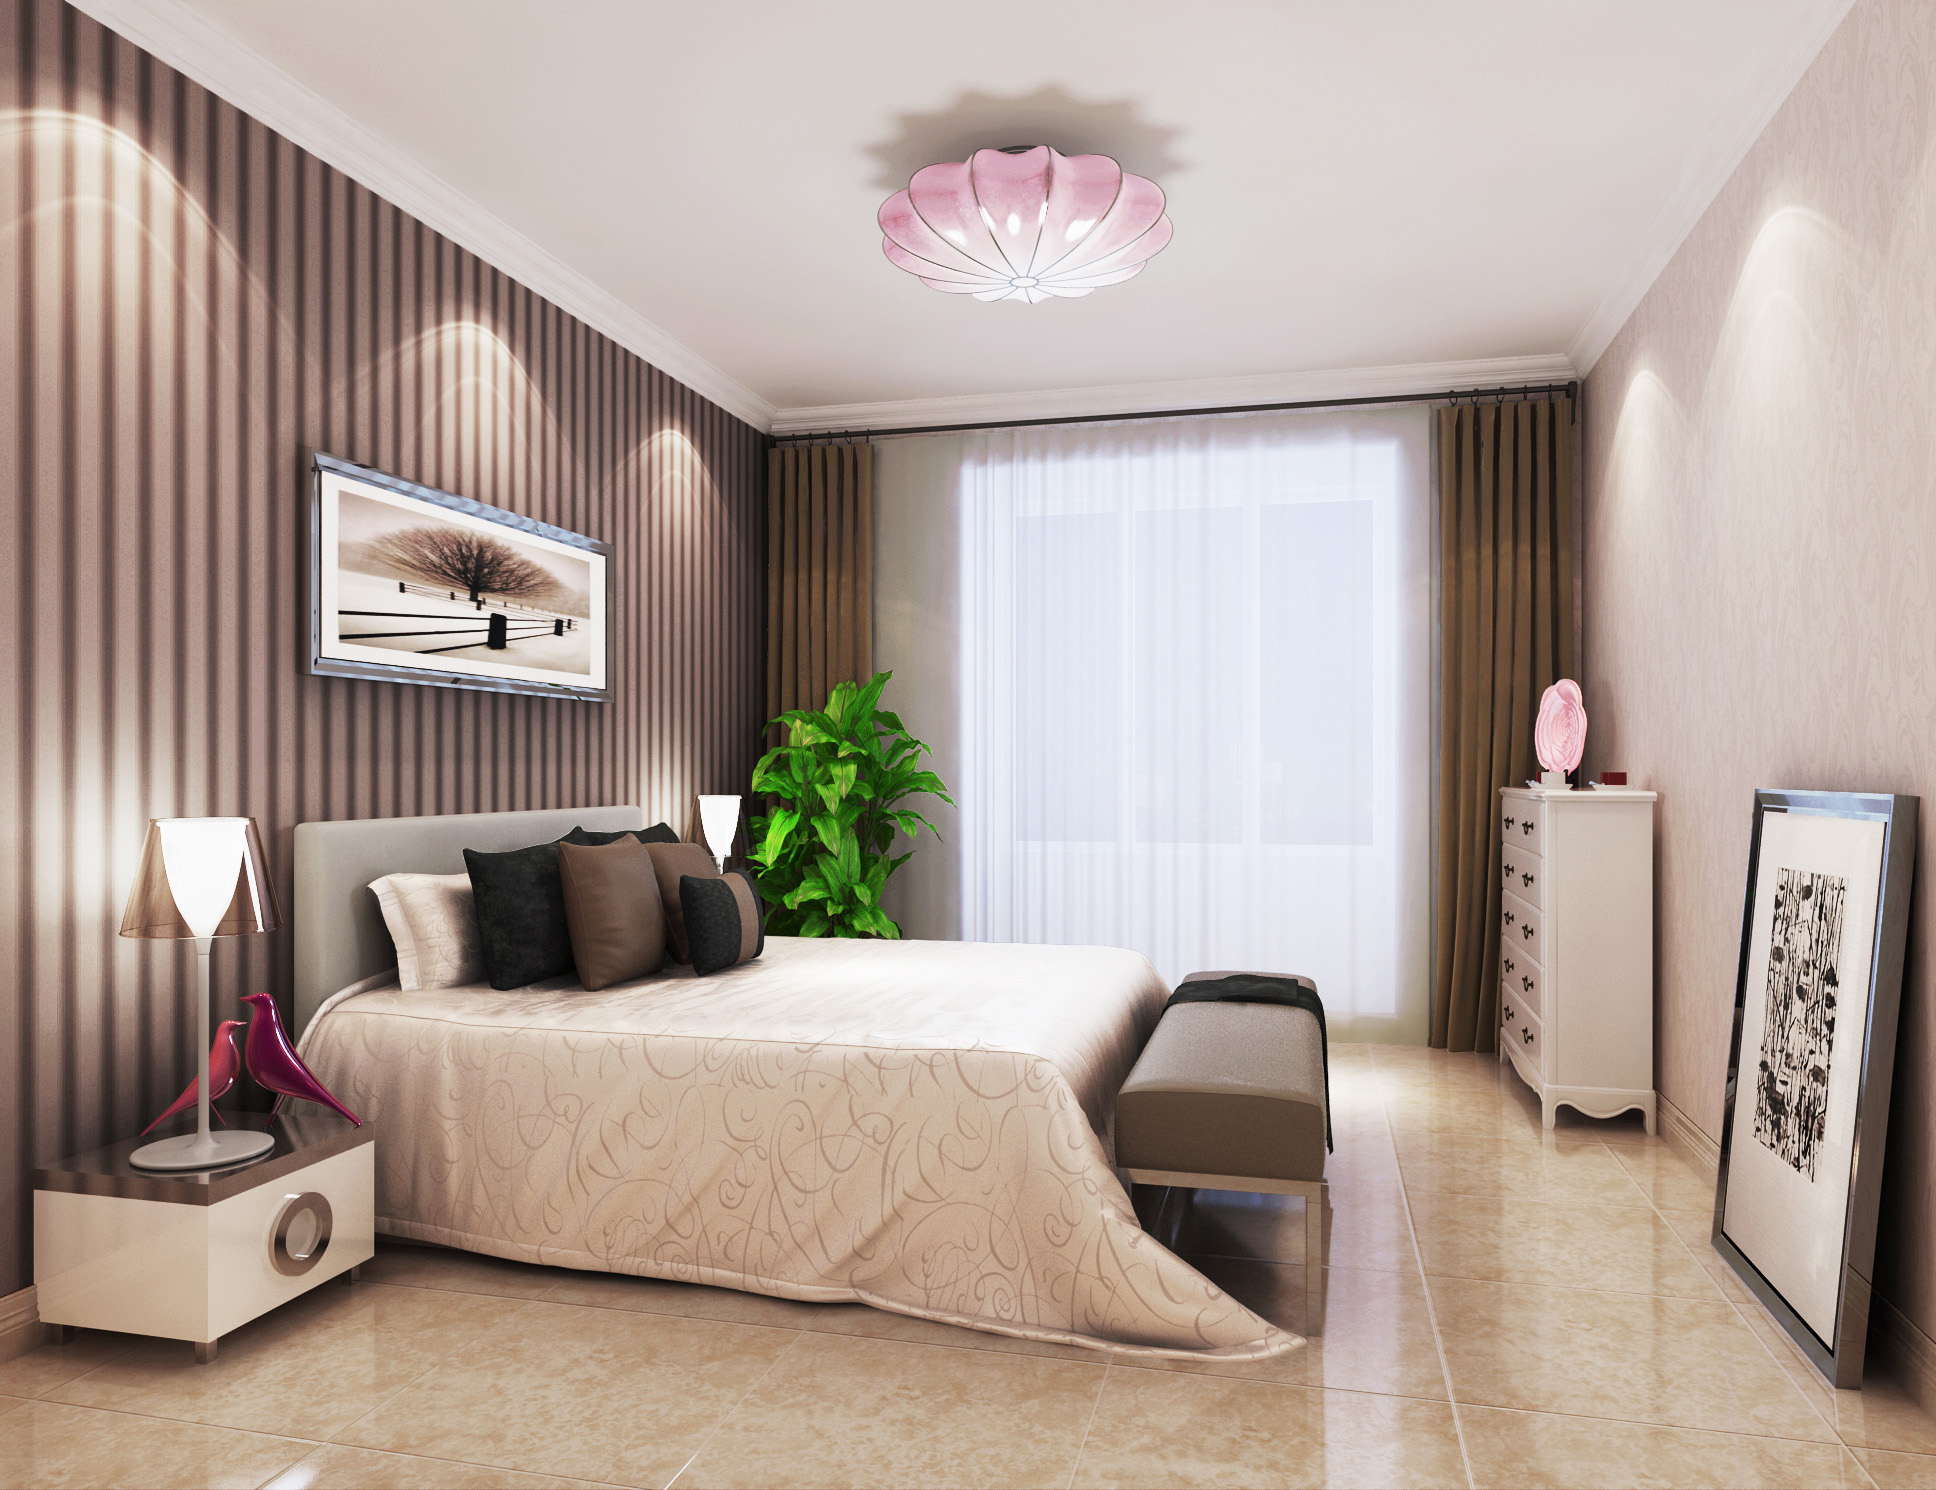 欧式 三居 卧室图片来自北京今朝装饰刘在恒盛艺墅经典欧式装饰设计的分享